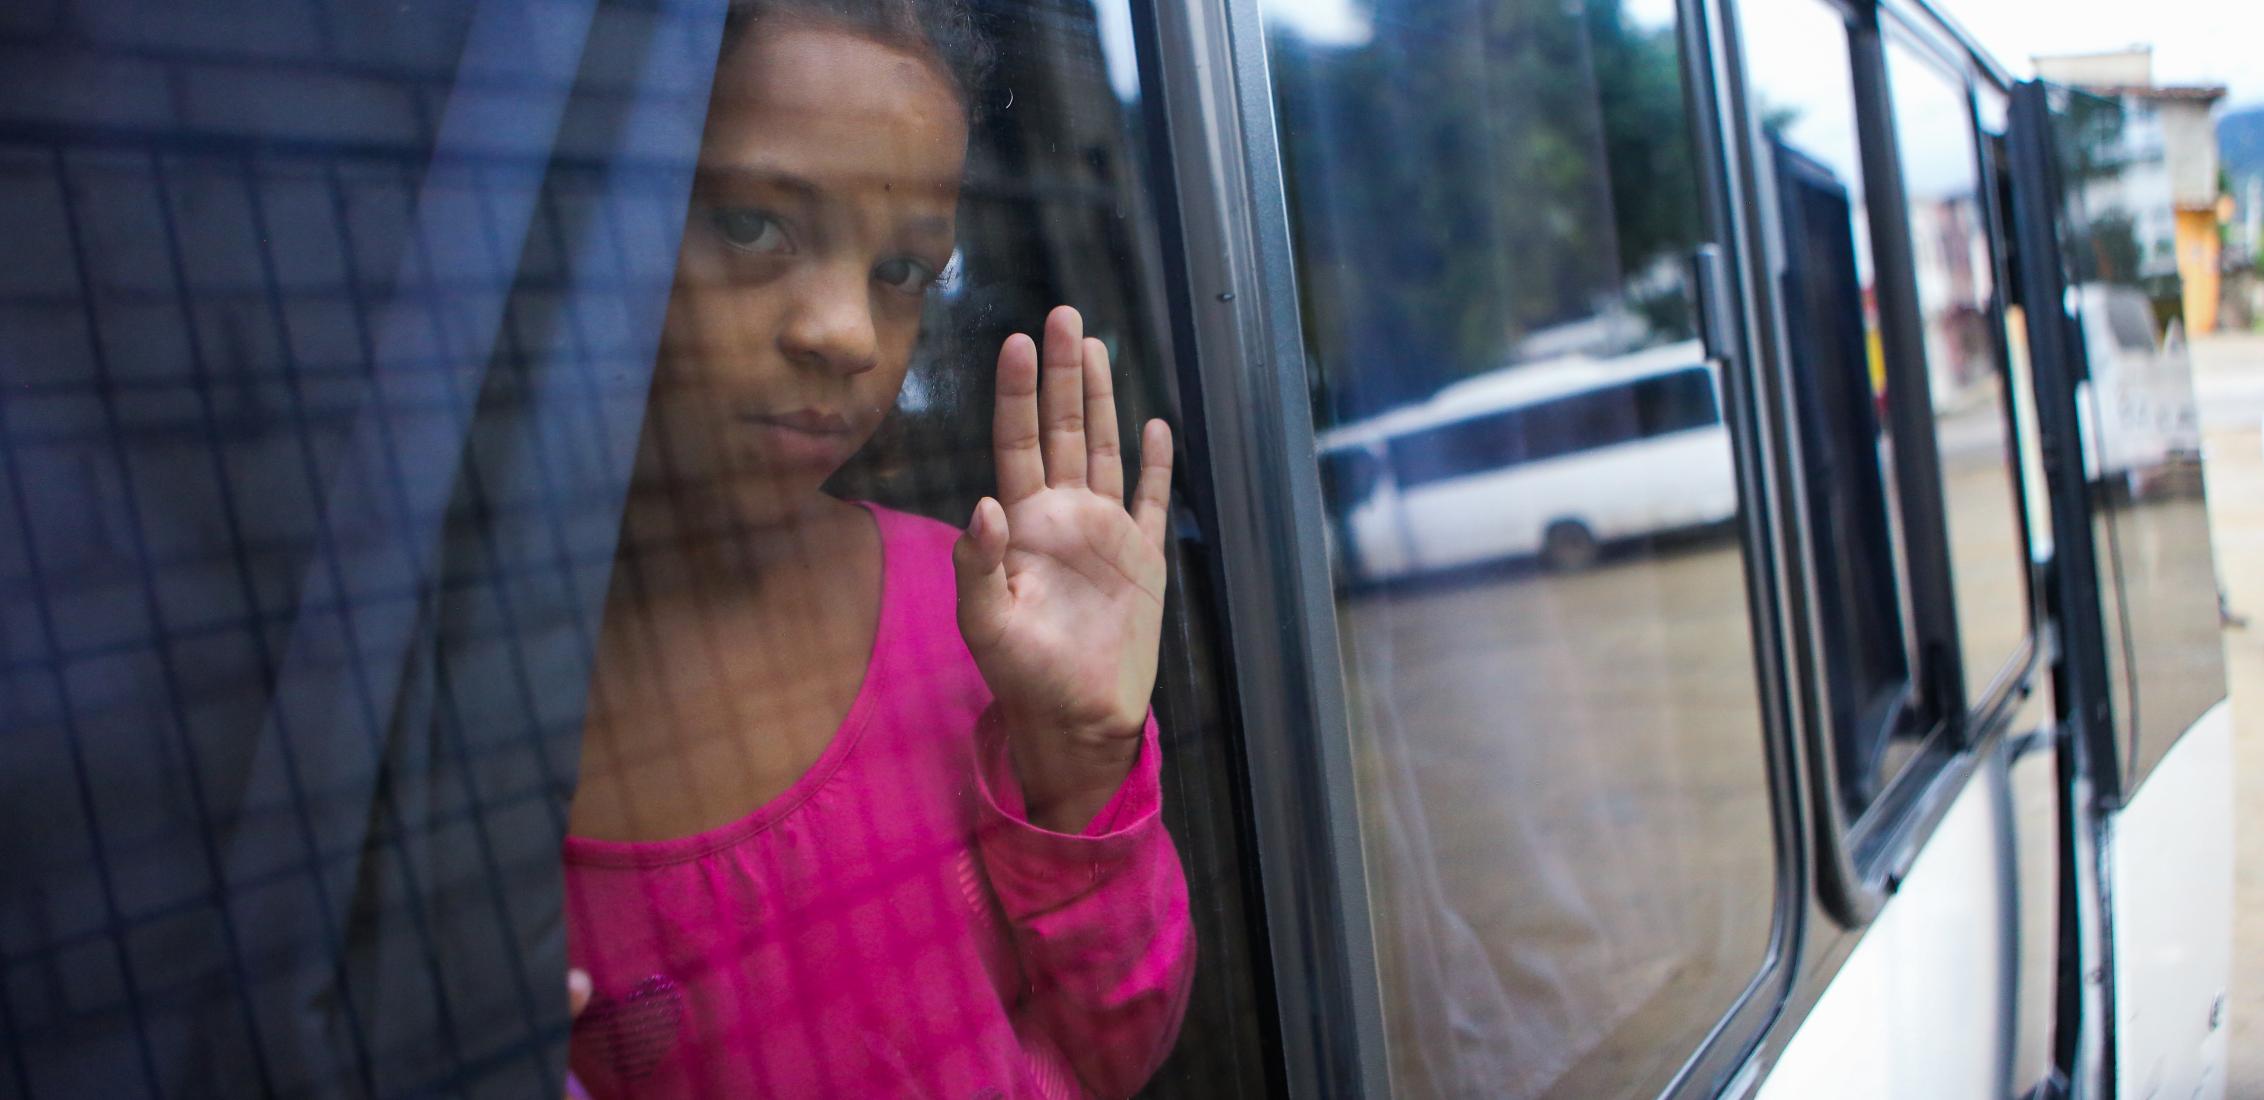 UNI480116/Membreño Edguimar, de 10 años, mira por la ventana del autobús que la transportará a Tegucigalpa para seguir la ruta migratoria hacia Estados Unidos, tras salir del Centro de Descanso Temporal "Alivio del Sufrimiento" situado en El Paraíso, el 4 de noviembre de 2023 en Honduras.